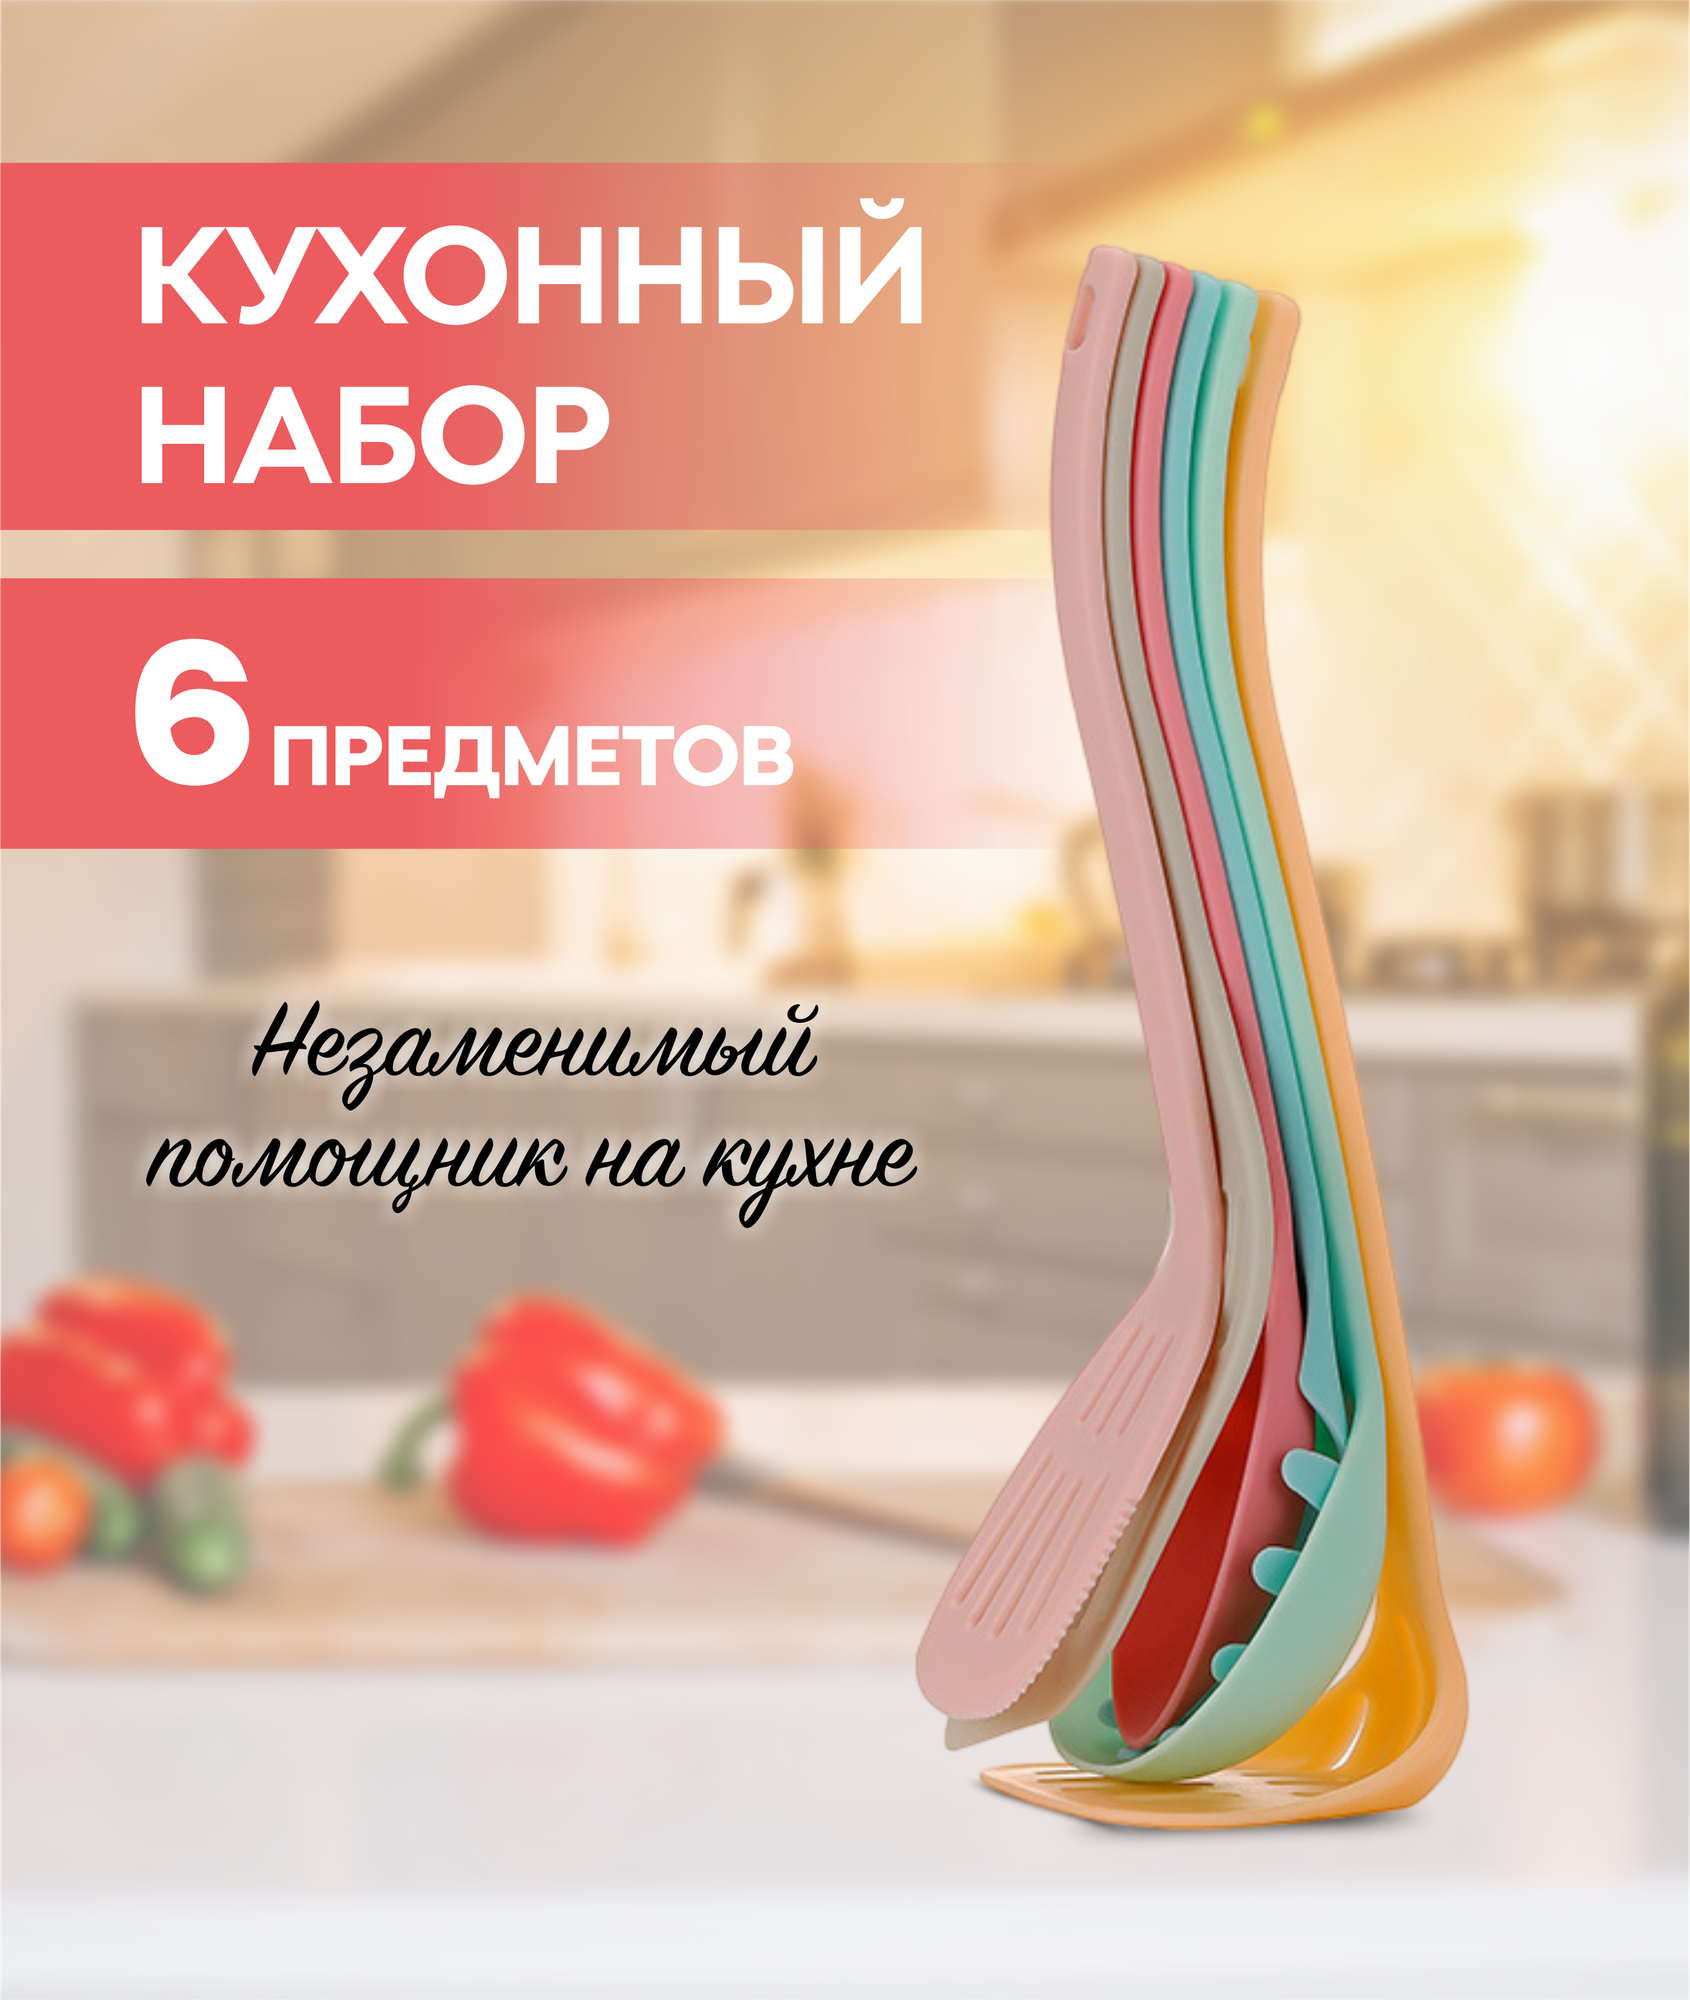 Набор кухонных принадлежностей пластиковый Masak, 6 шт / столовые приборы / набор навесок